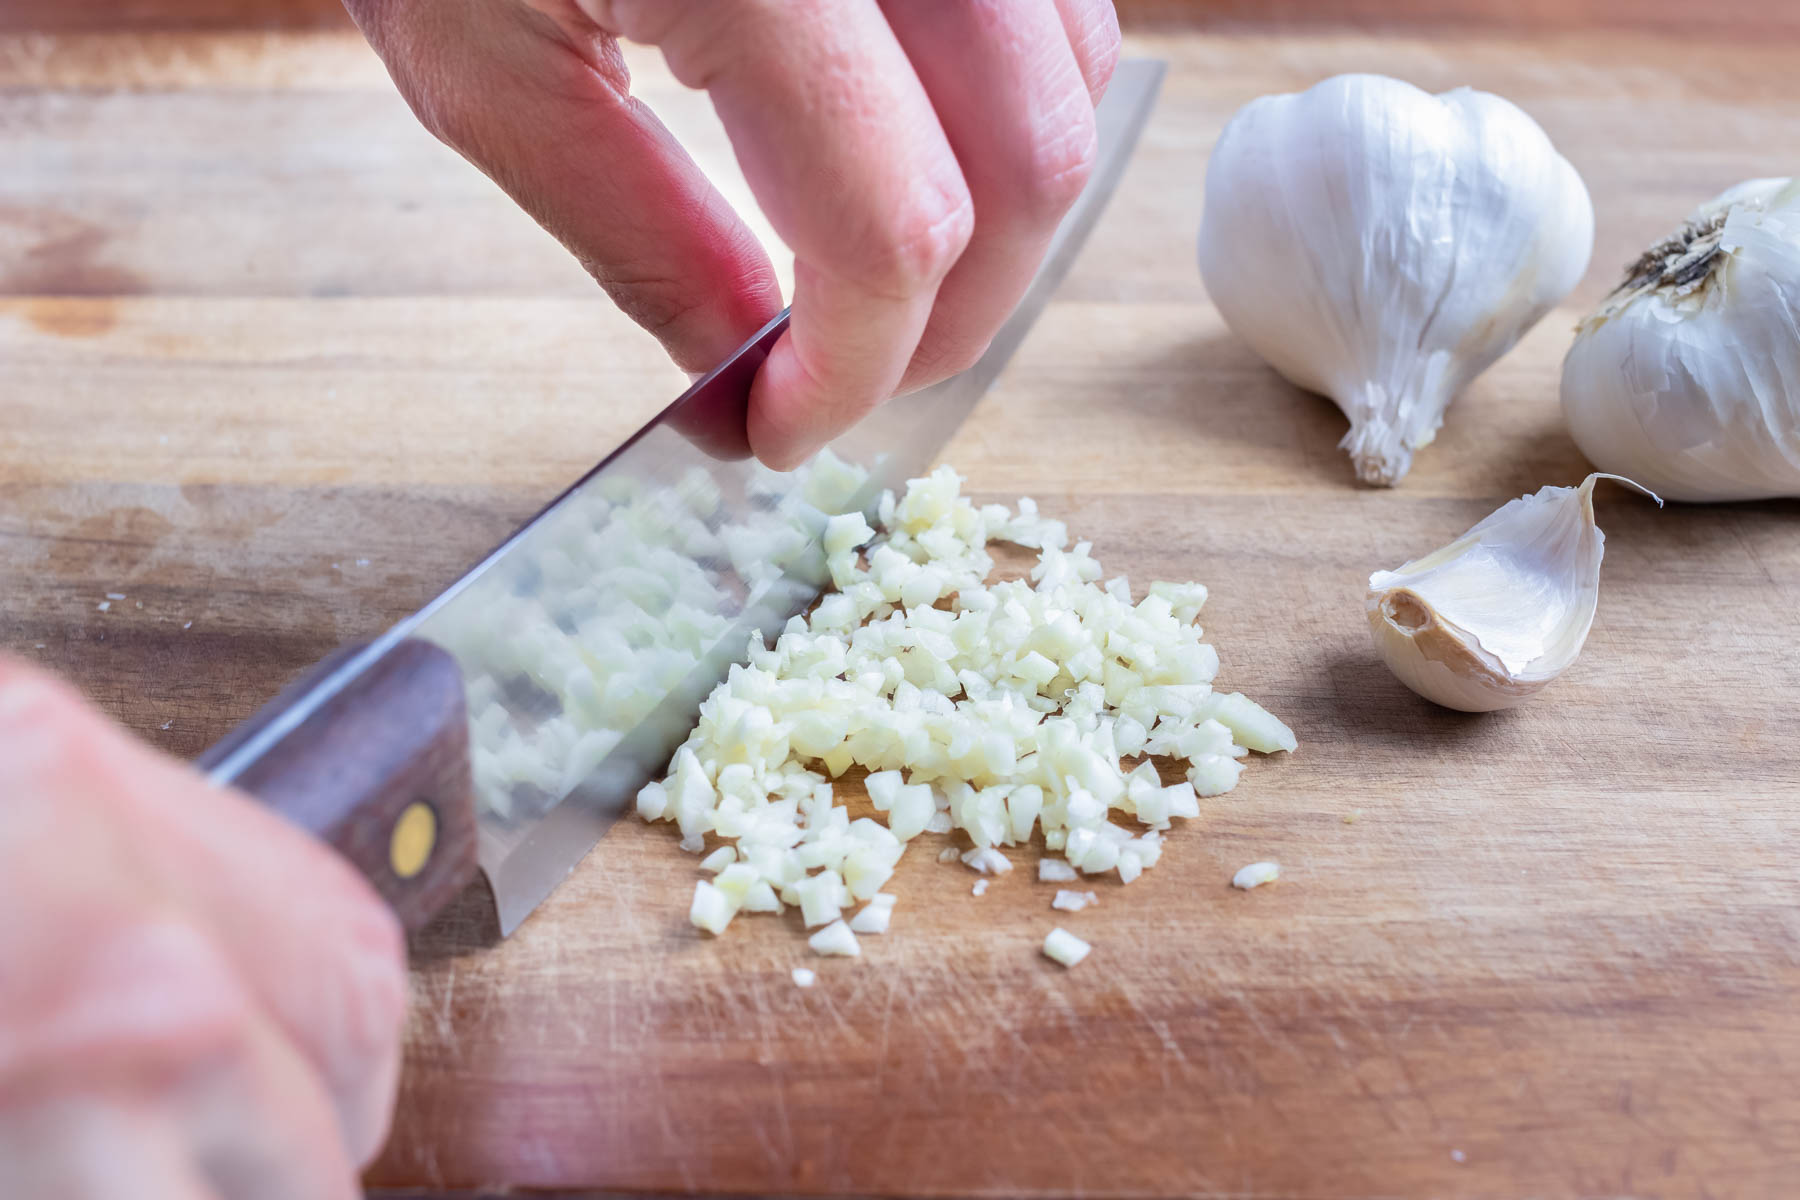 https://recipes.net/wp-content/uploads/2023/10/how-to-cut-up-garlic-clove-1697035904.jpg